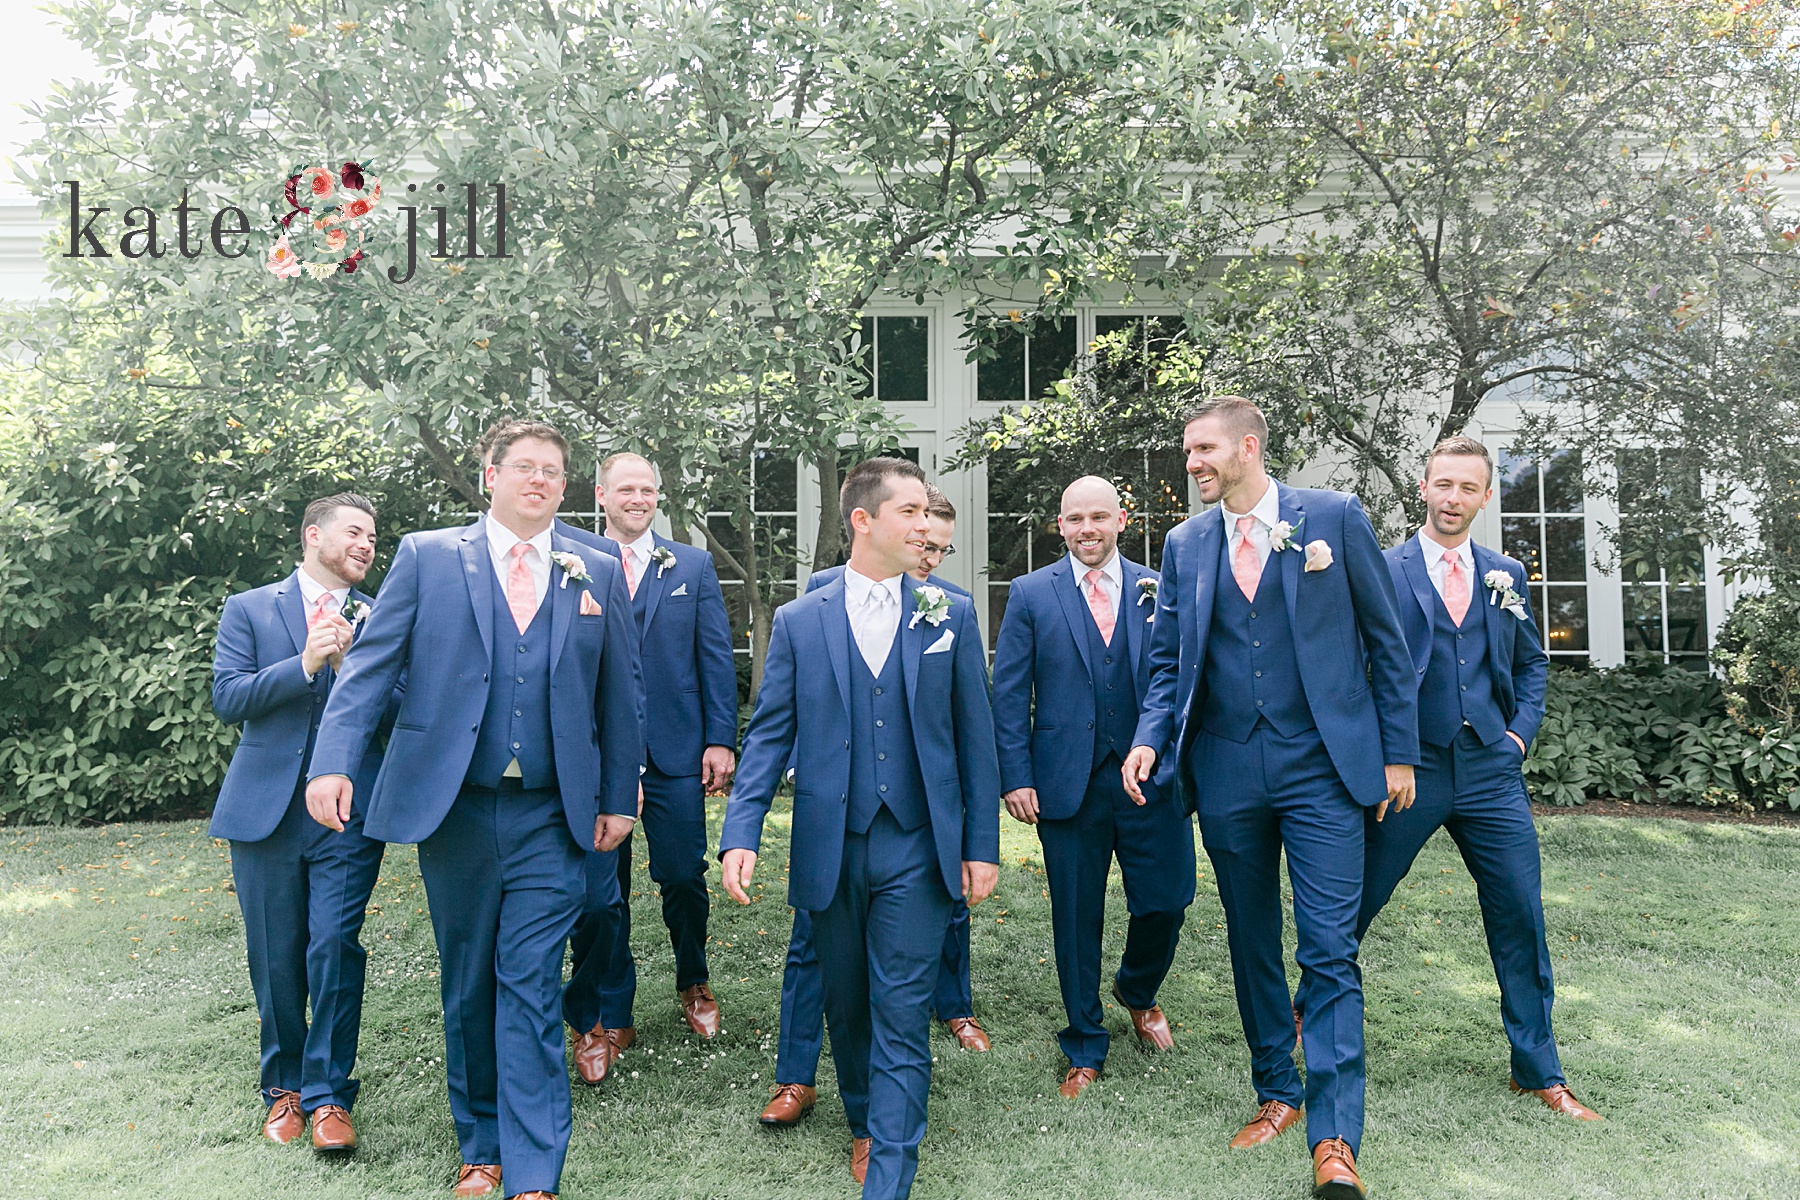 groomsmen deerfield wedding photos